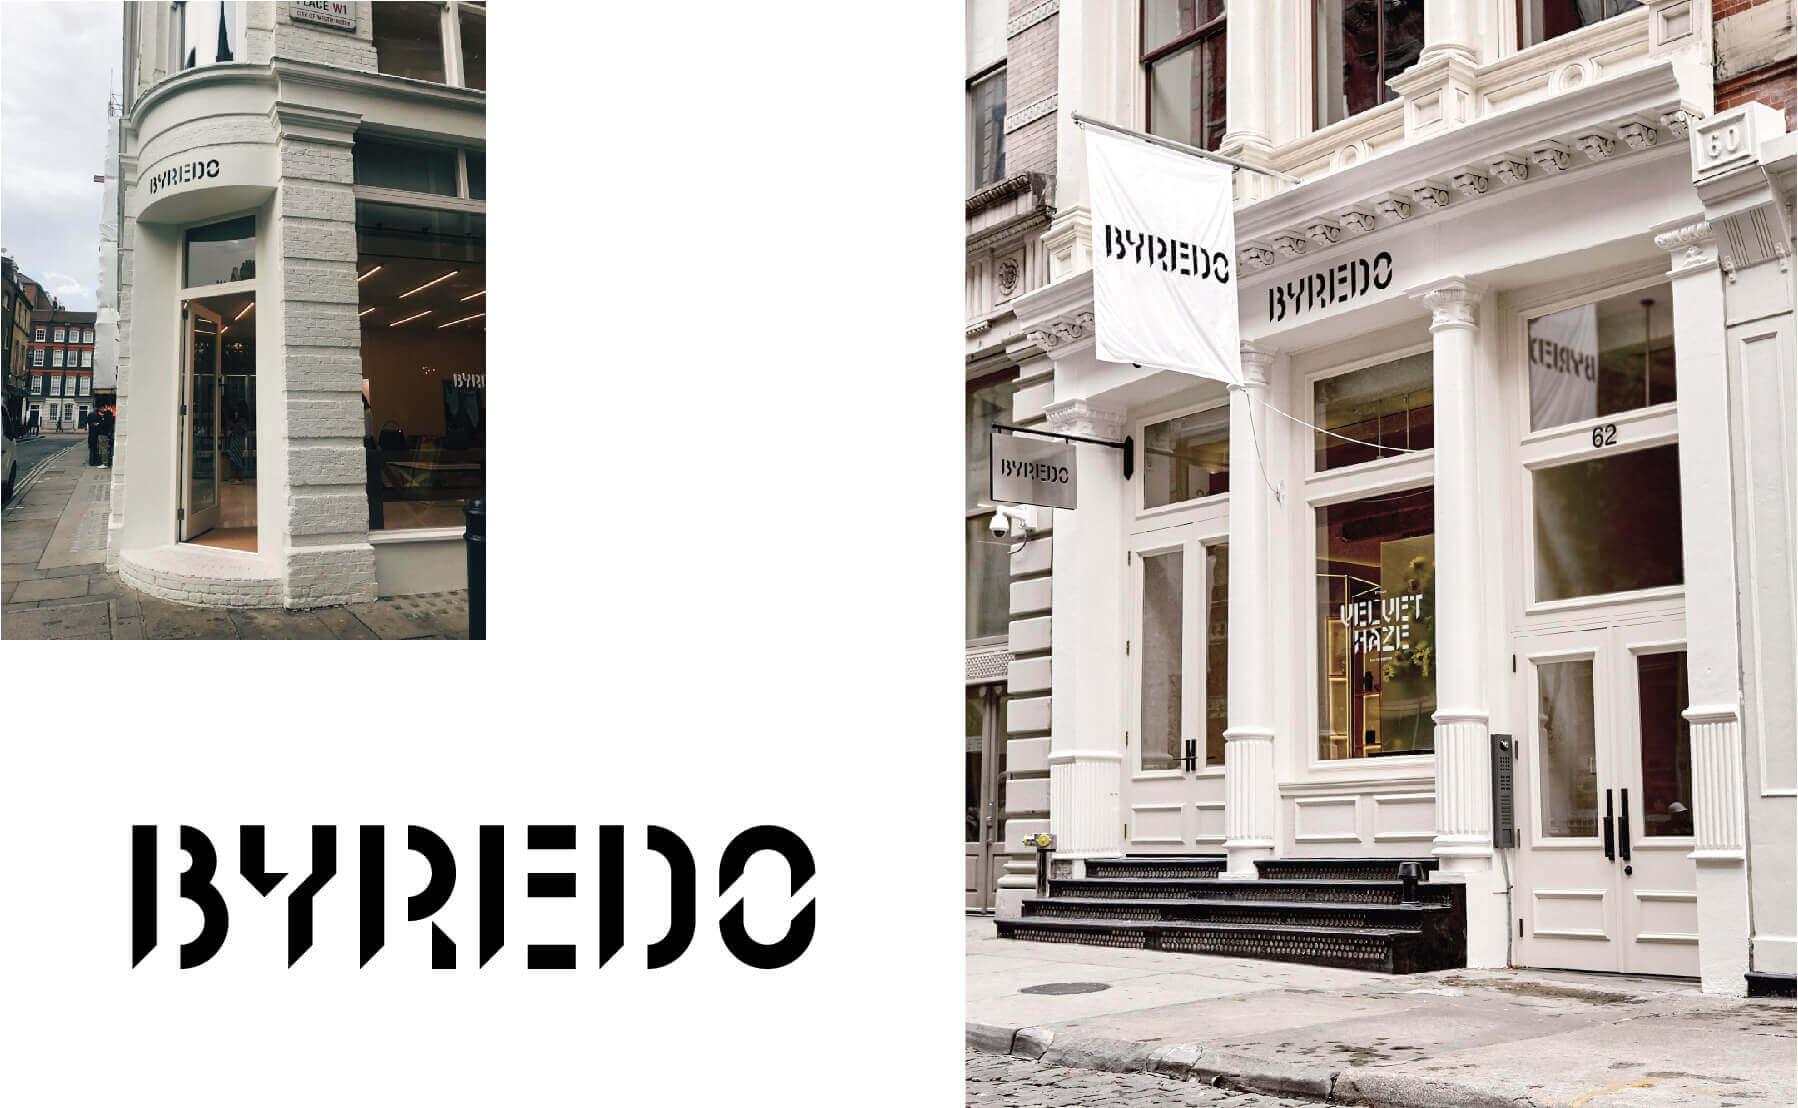 瑞典香氛品牌Byredo是國際飯店IHG洲際酒店指定選用的飯店沐浴備品